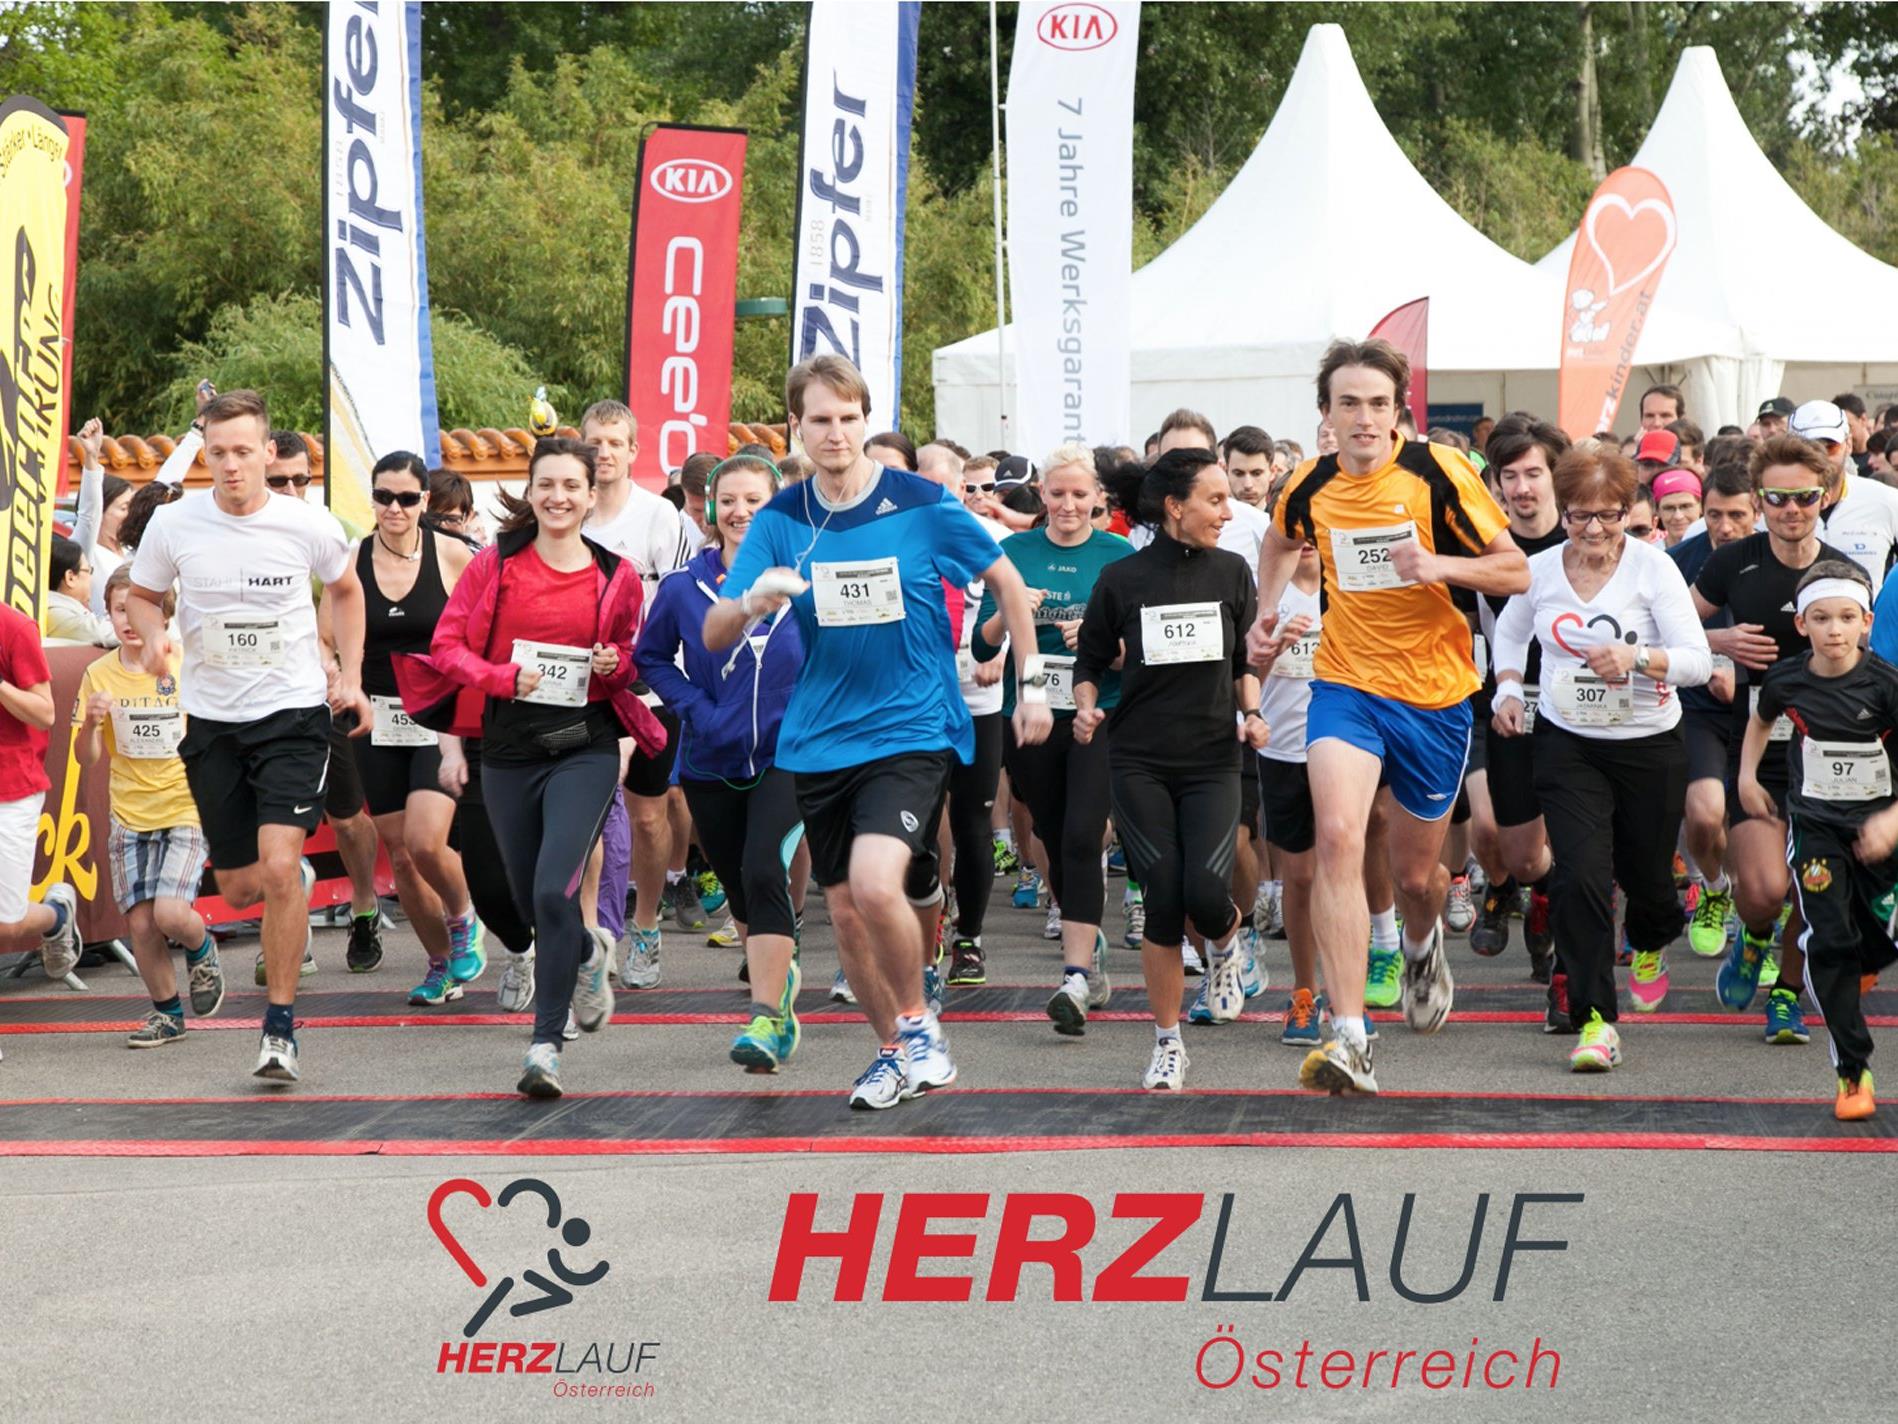 Der Startschuss für den Hauptlauf des Herzlaufs in Wien fällt am 4. Mai um 18.30 Uhr im Donaupark.